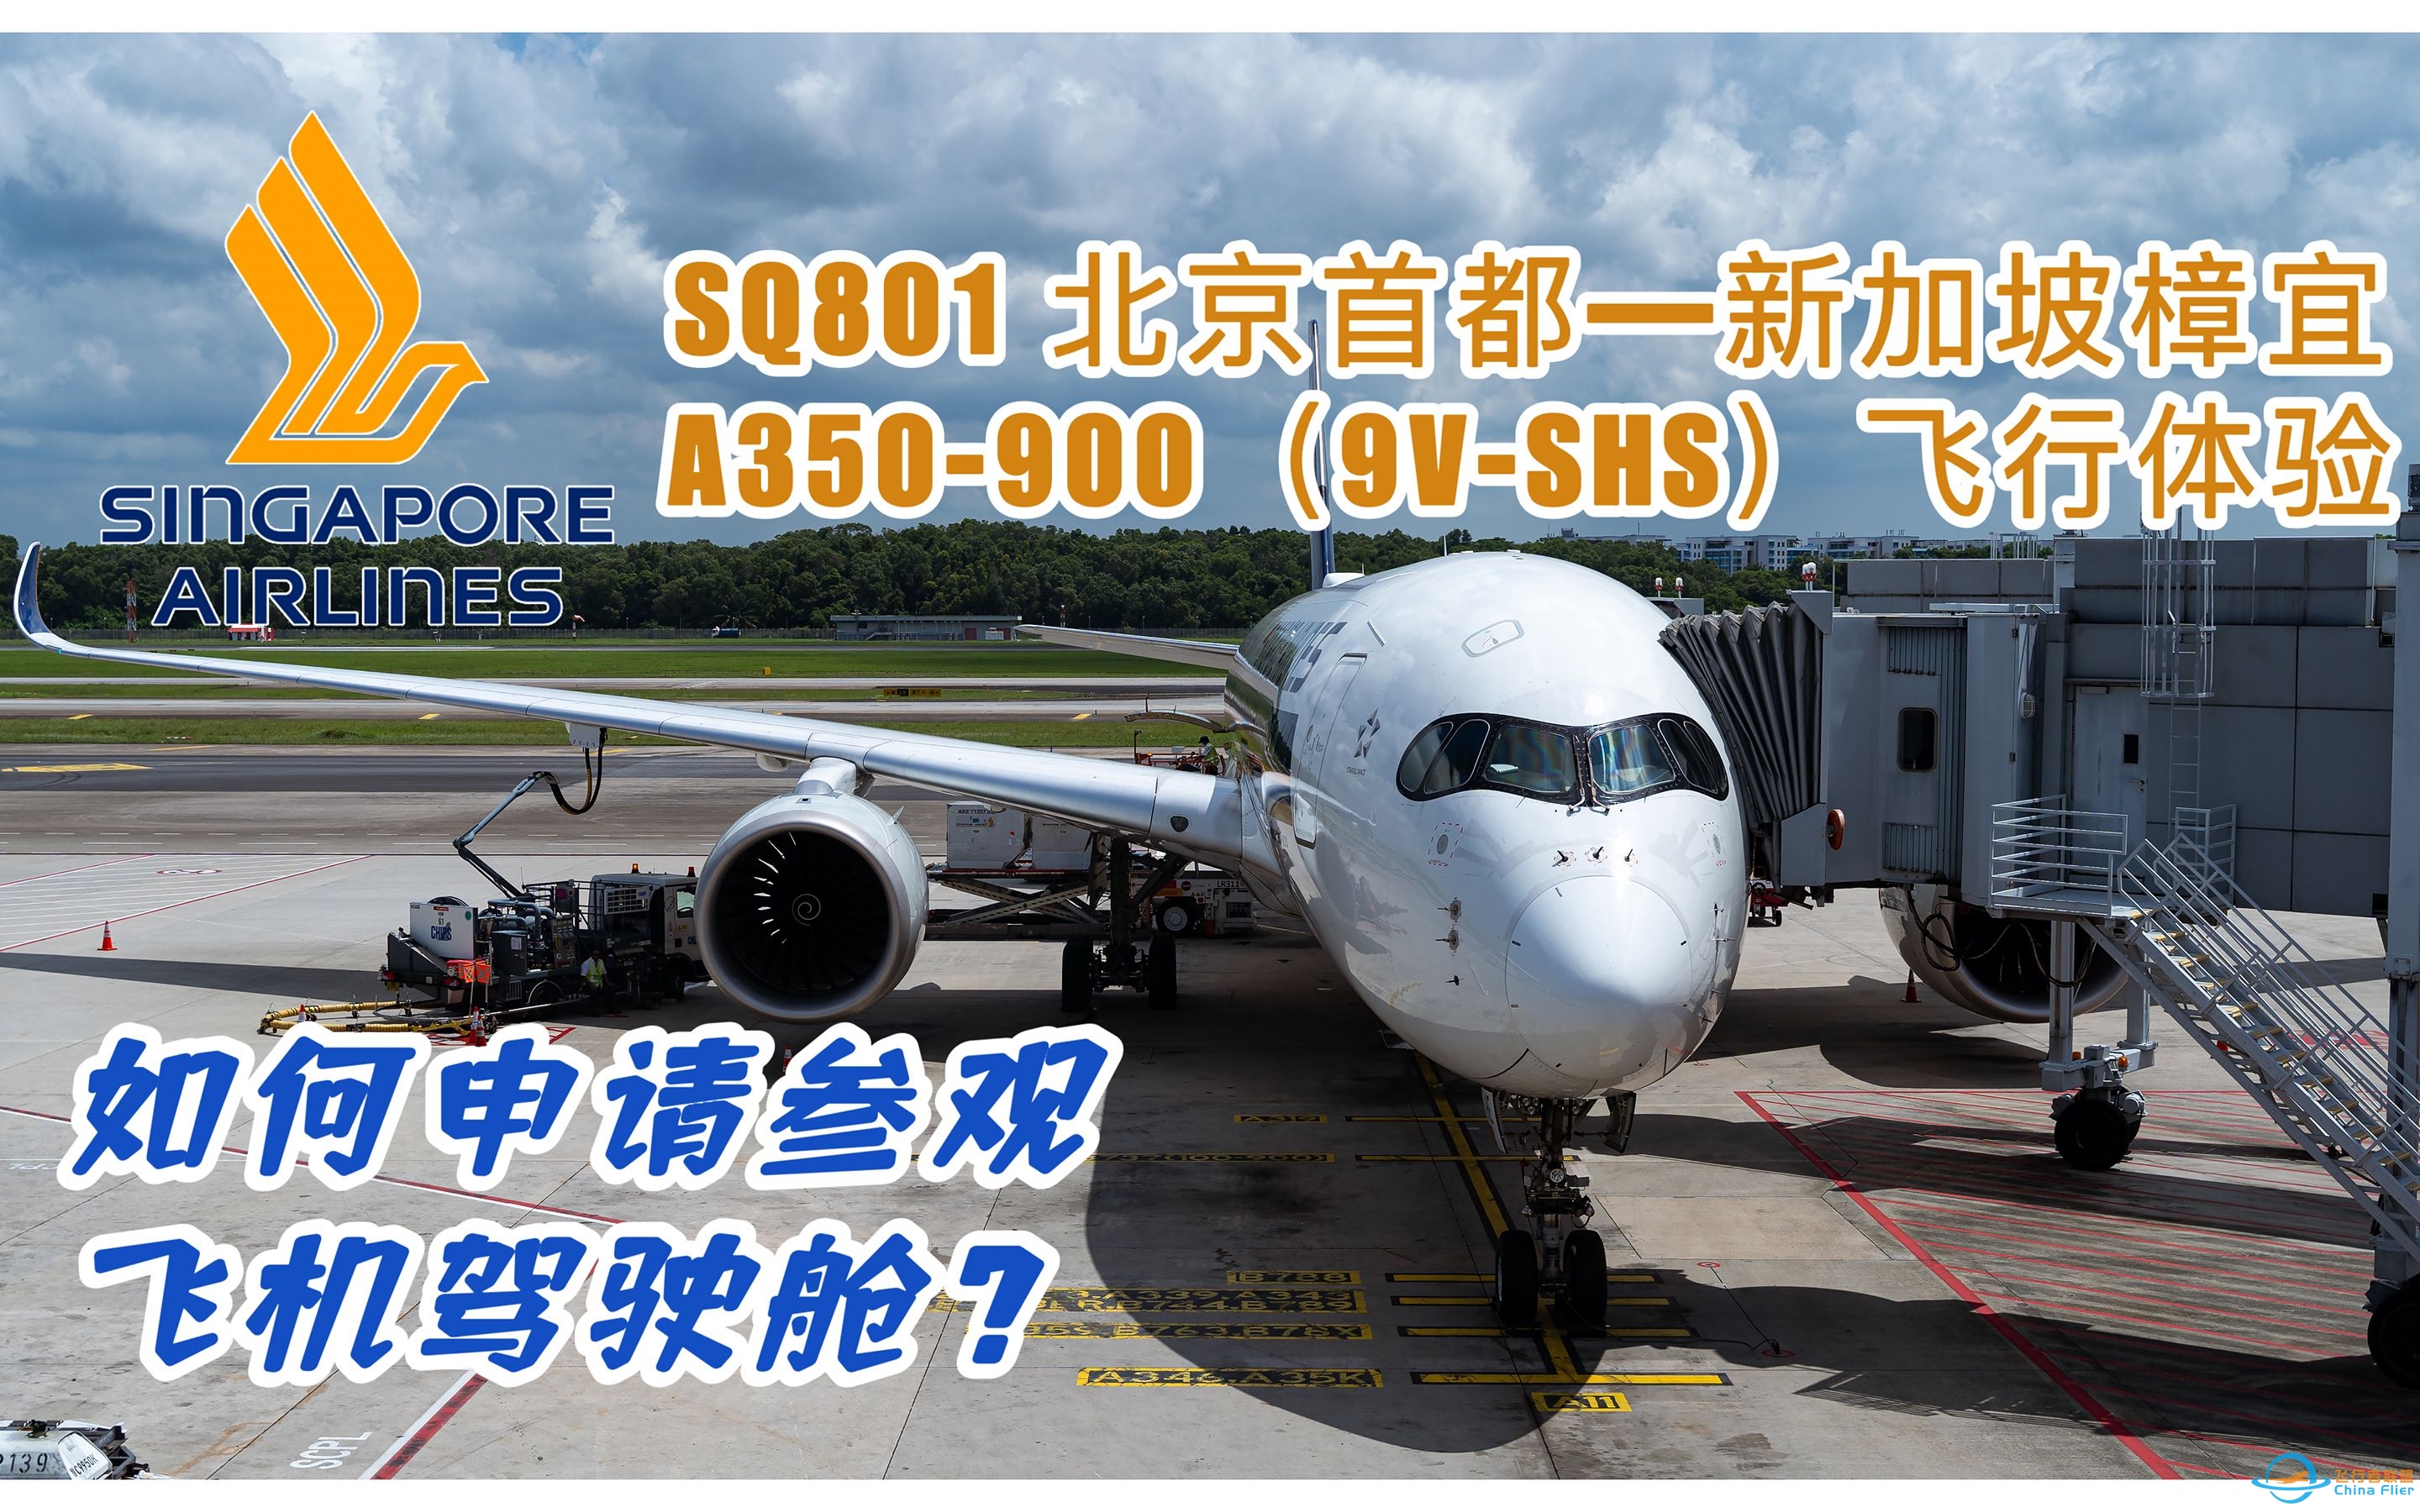 【飞行记录25】如何参观飞机驾驶舱；时隔4年再次出境|新加坡航空SQ801 A350-900北京首都—新加坡樟宜飞行体验-4935 